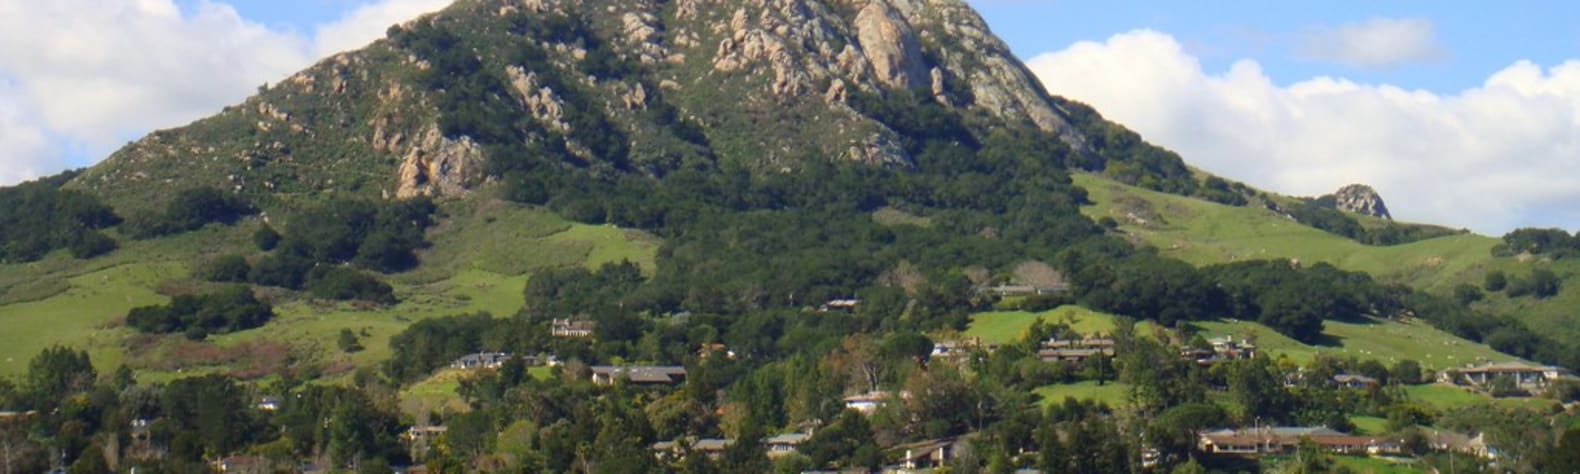 Bishop Peak